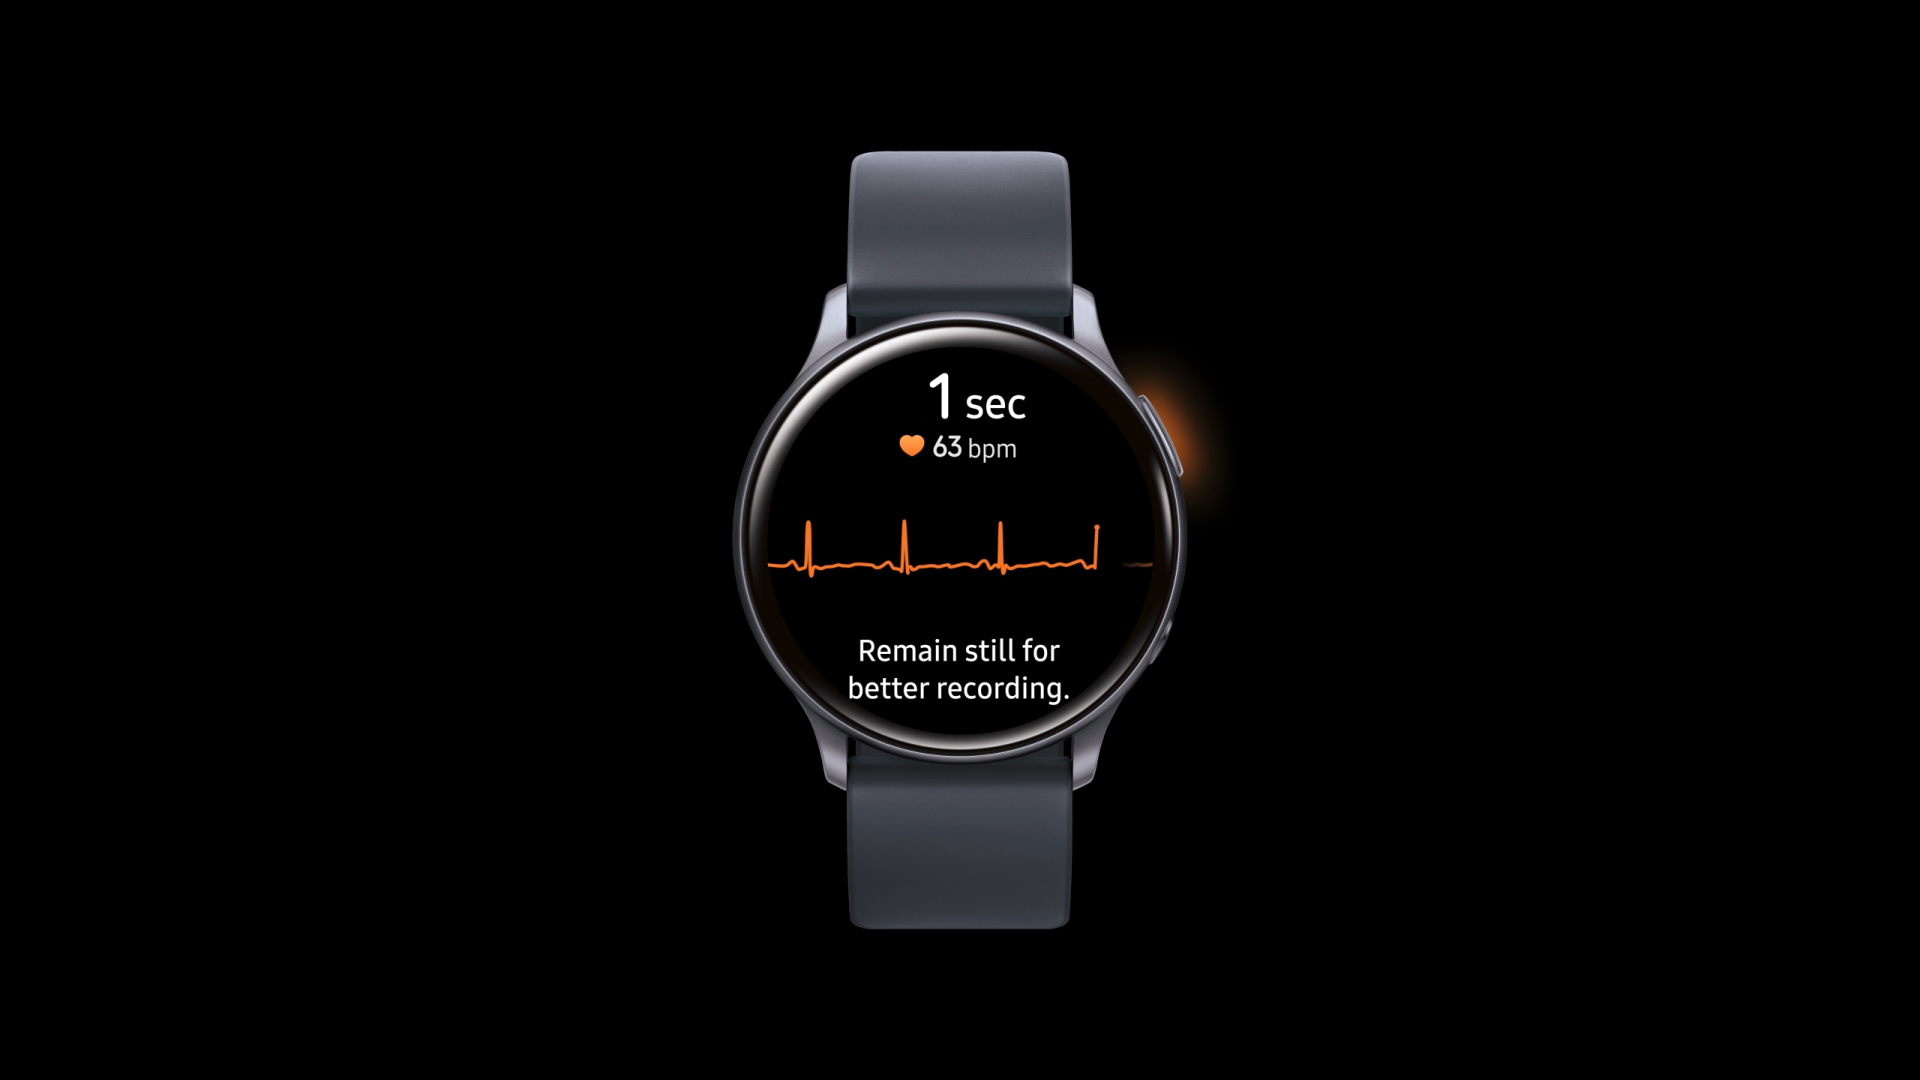 Chức năng theo dõi điện tim trên Samsung Galaxy Watch Active 2 giúp bạn có thể chăm sóc sức khỏe của mình một cách chính xác và hiệu quả hơn bao giờ hết. Đừng bỏ lỡ cơ hội trải nghiệm tính năng này!